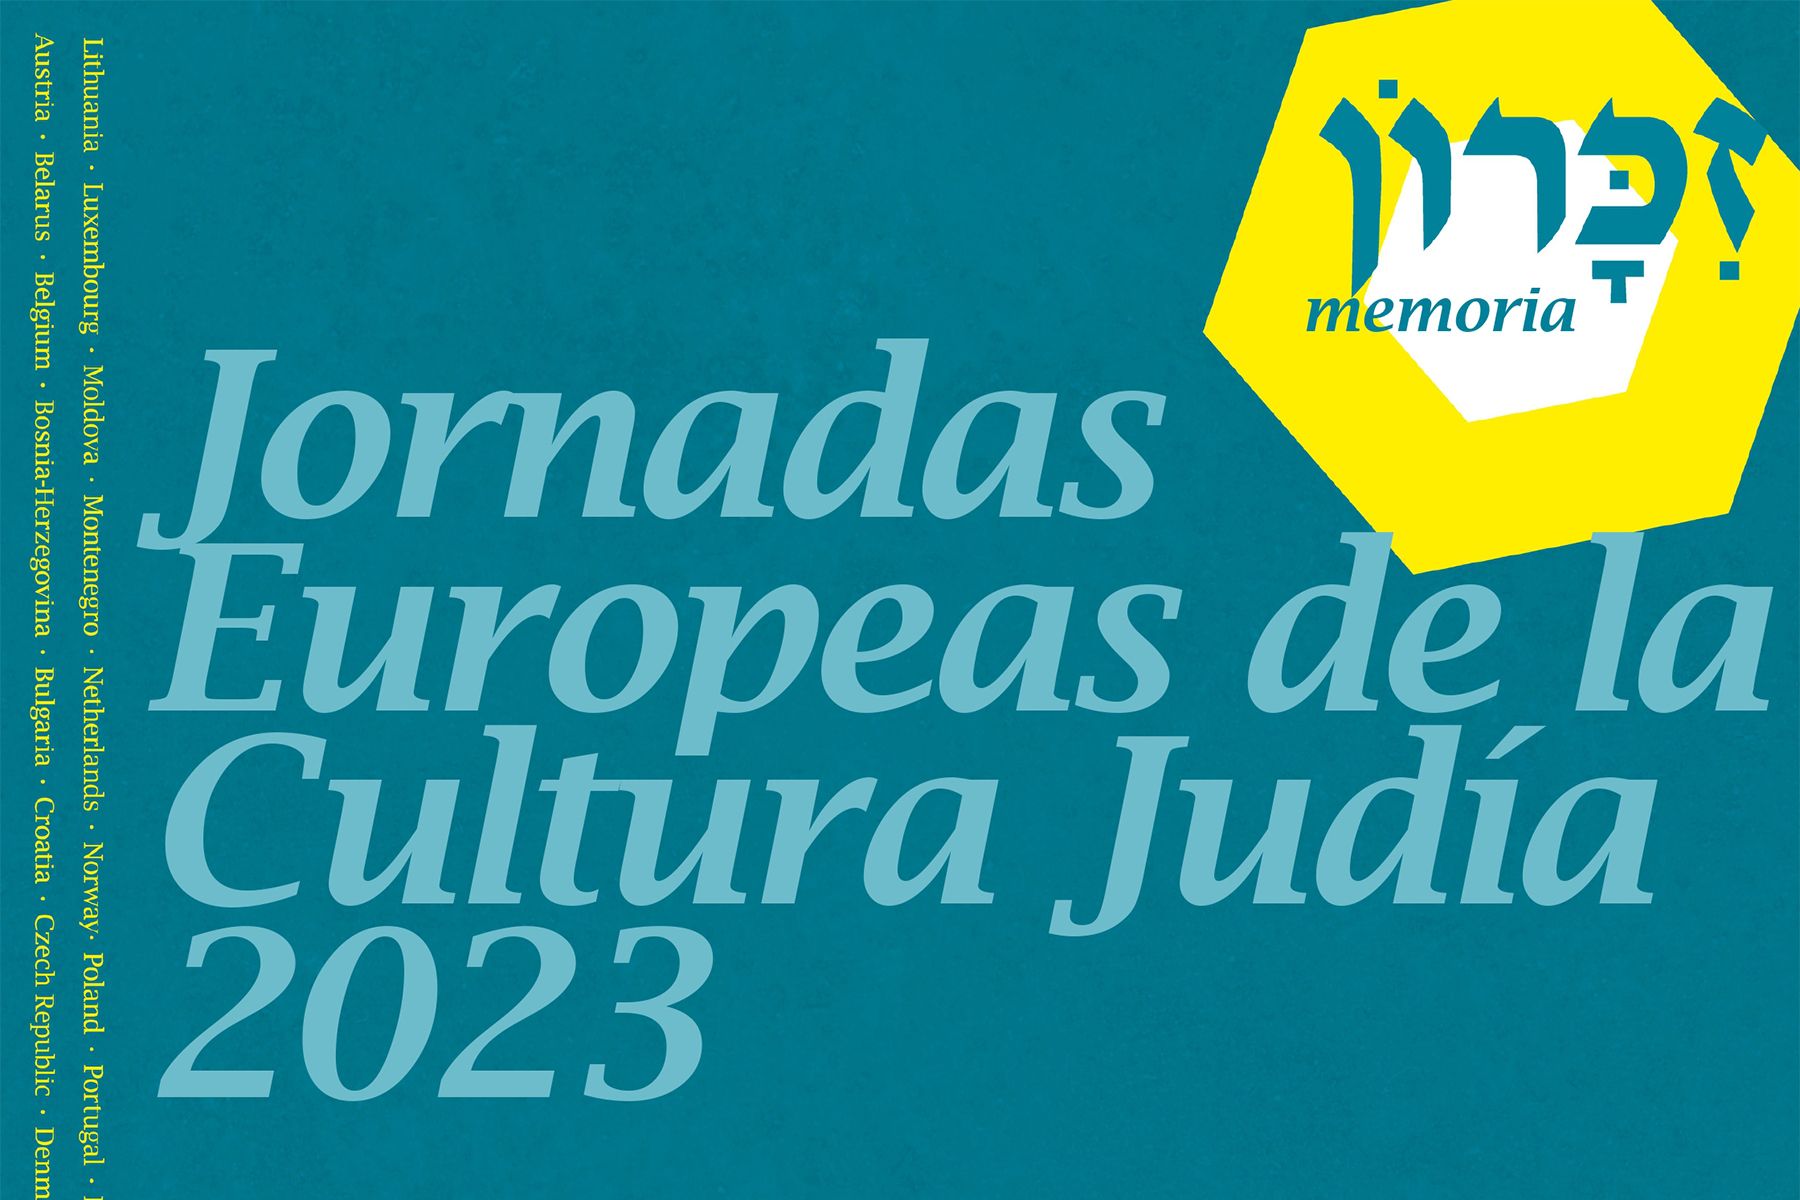 León se suma a la celebración de las Jornadas Europeas de la Cultura Judía